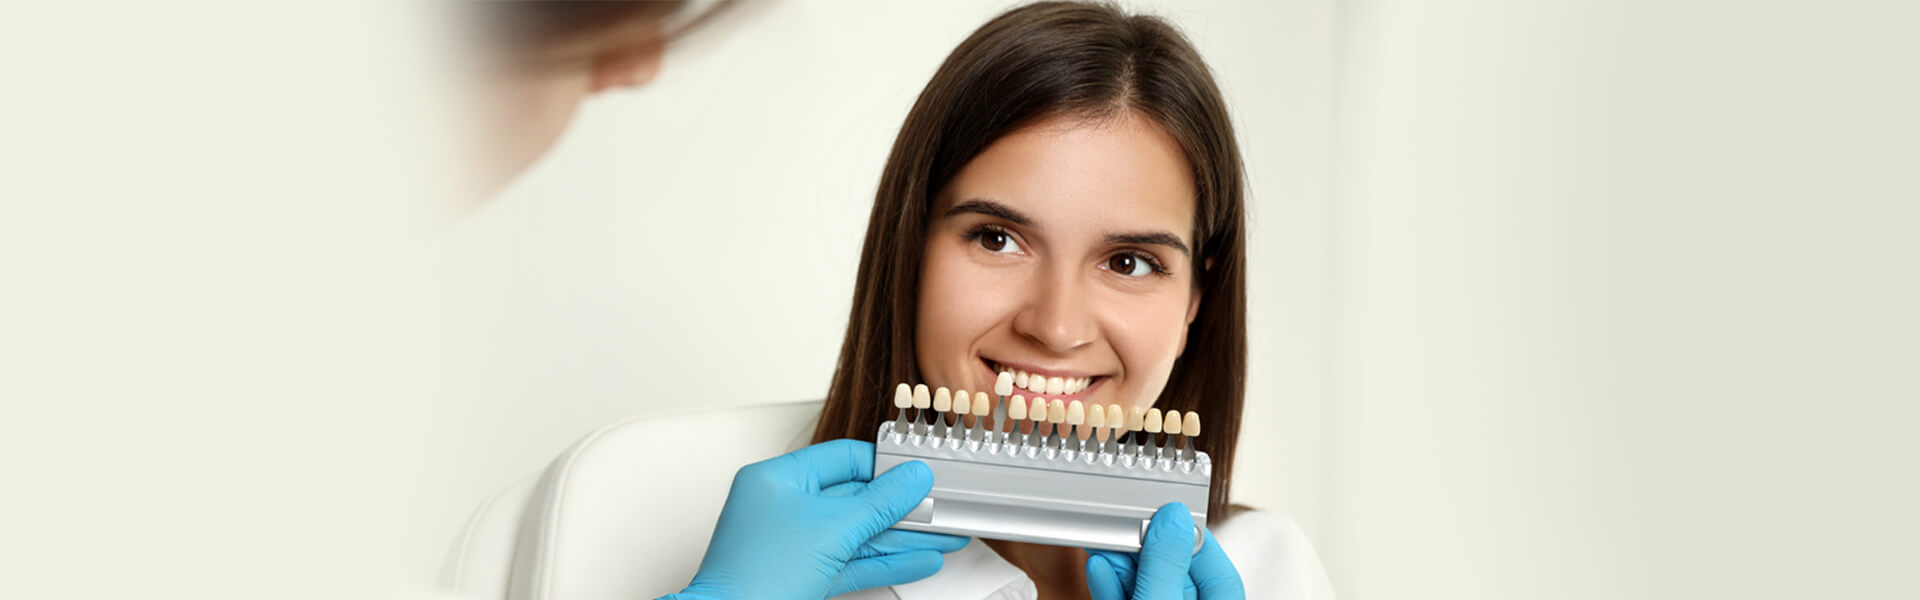 Dental Veneers Vs. Bonding: Pros and Cons